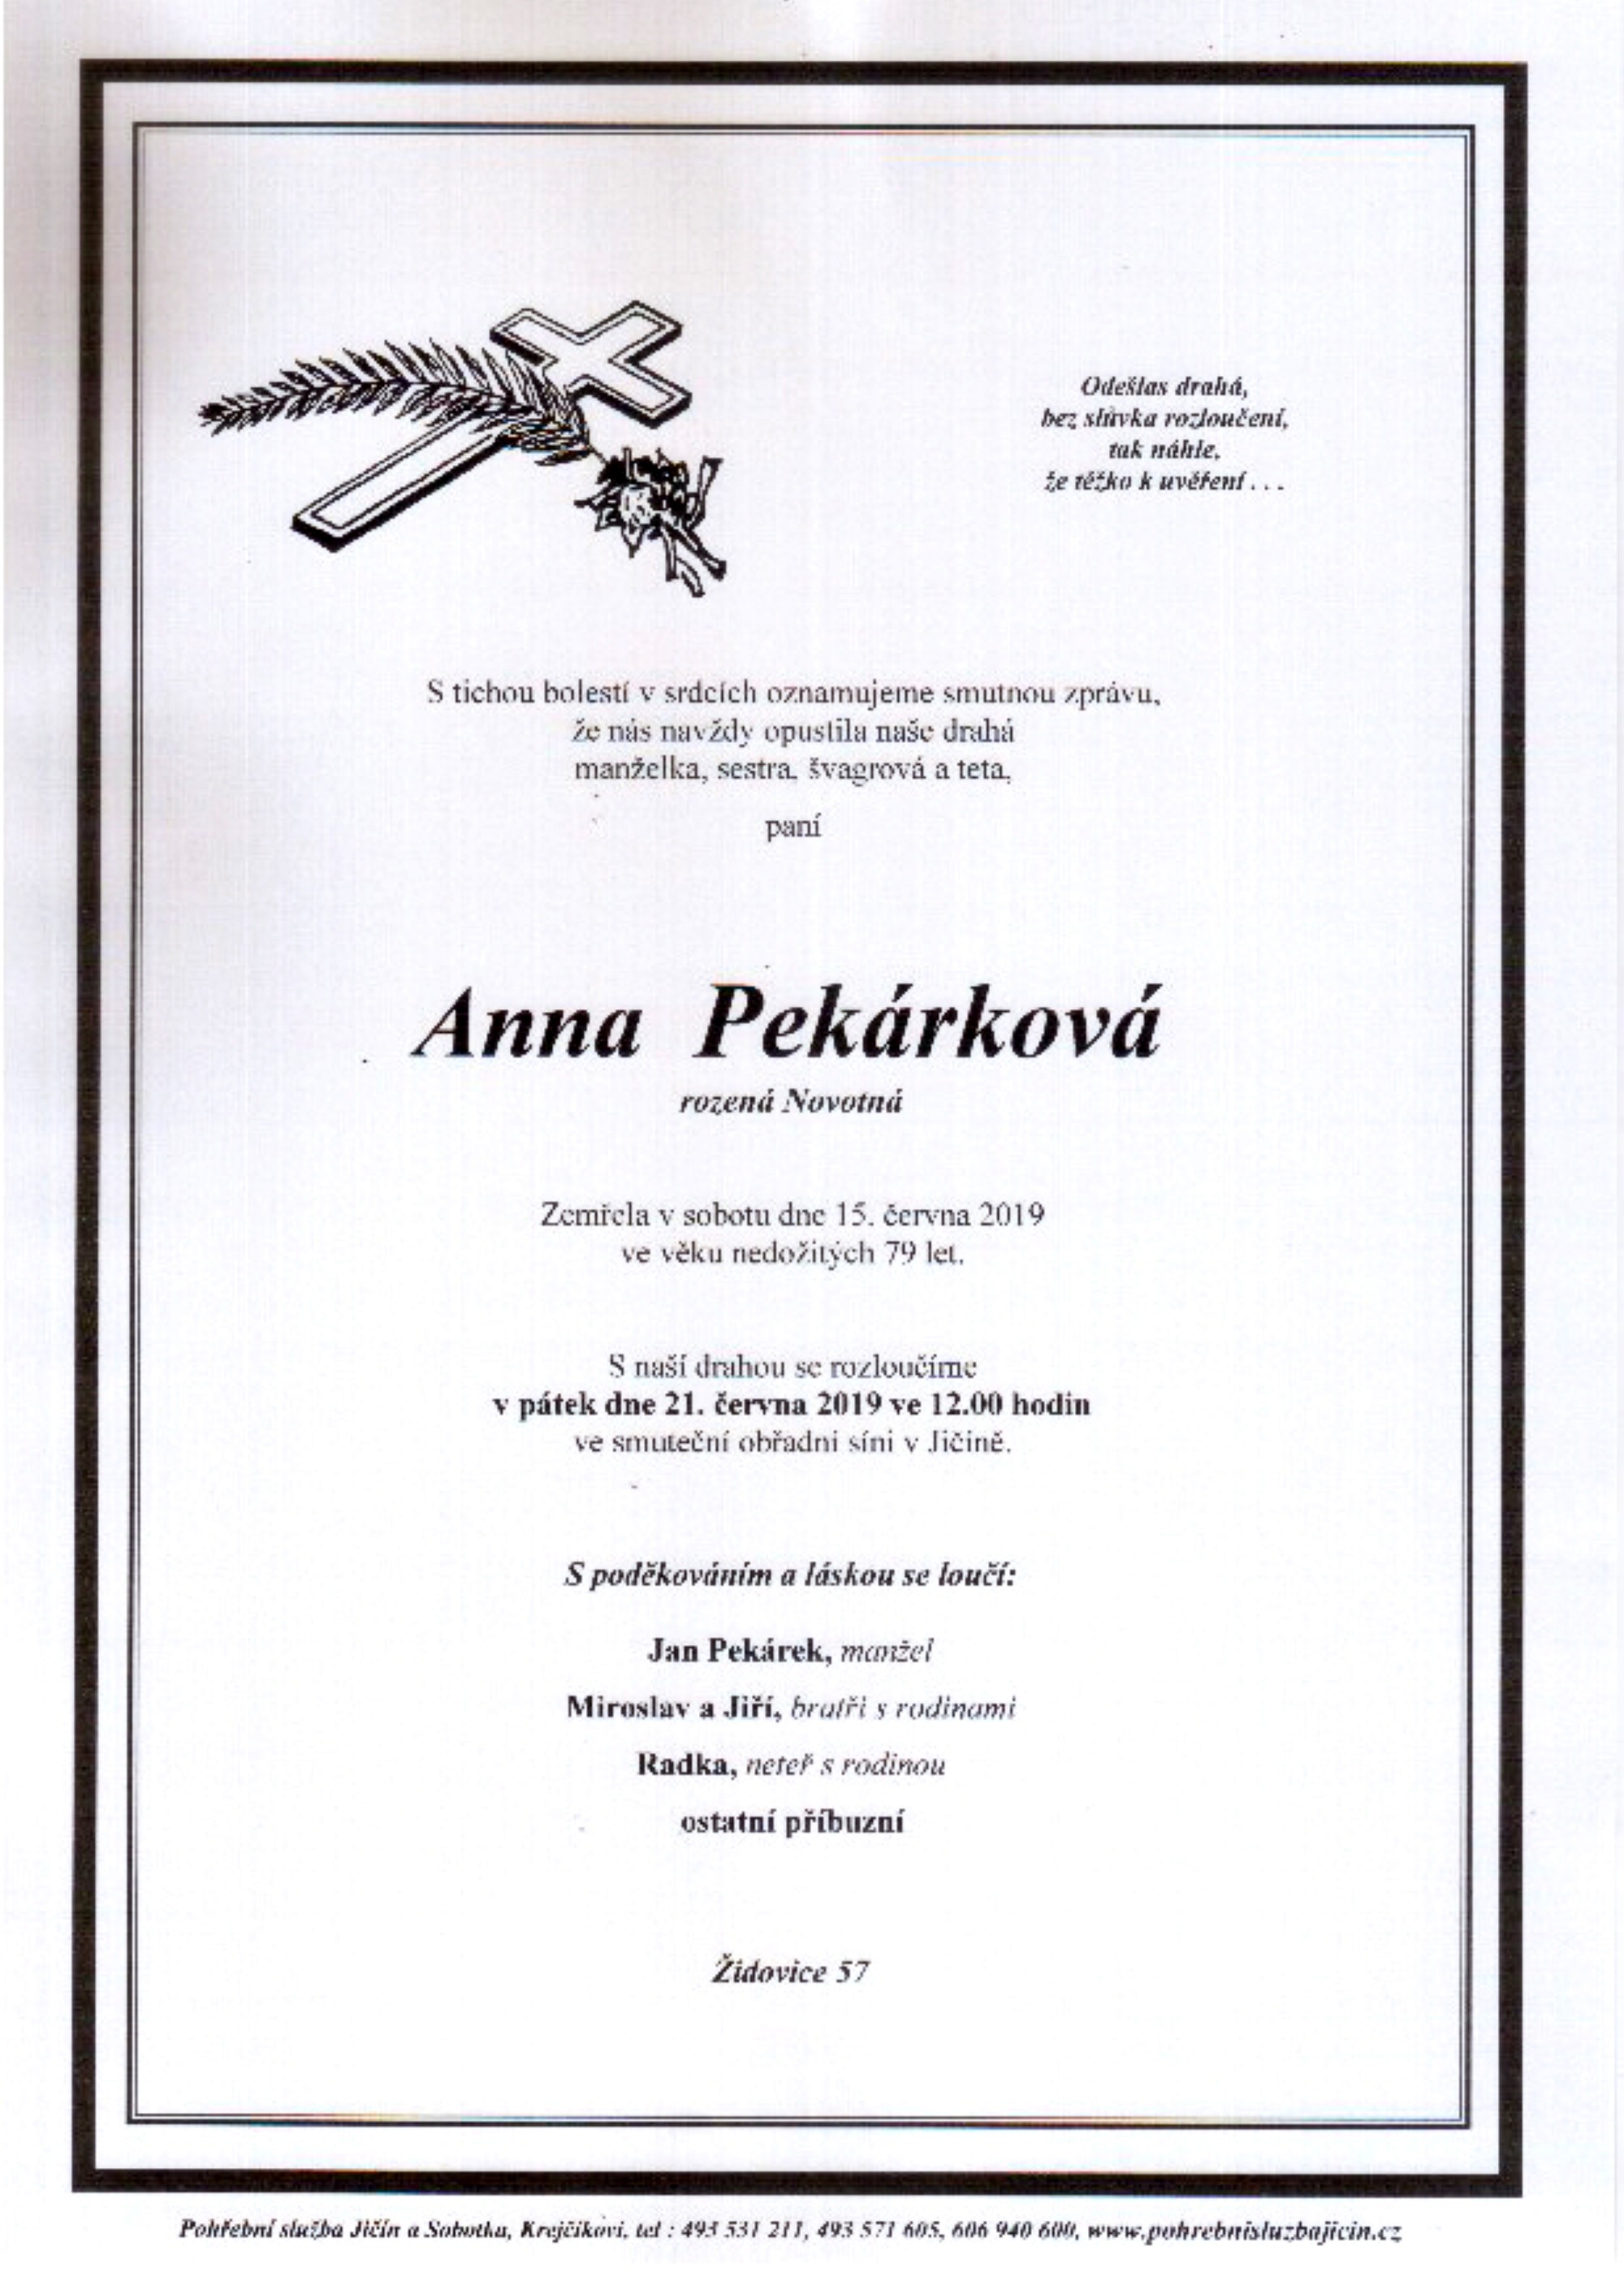 Anna Pekárková